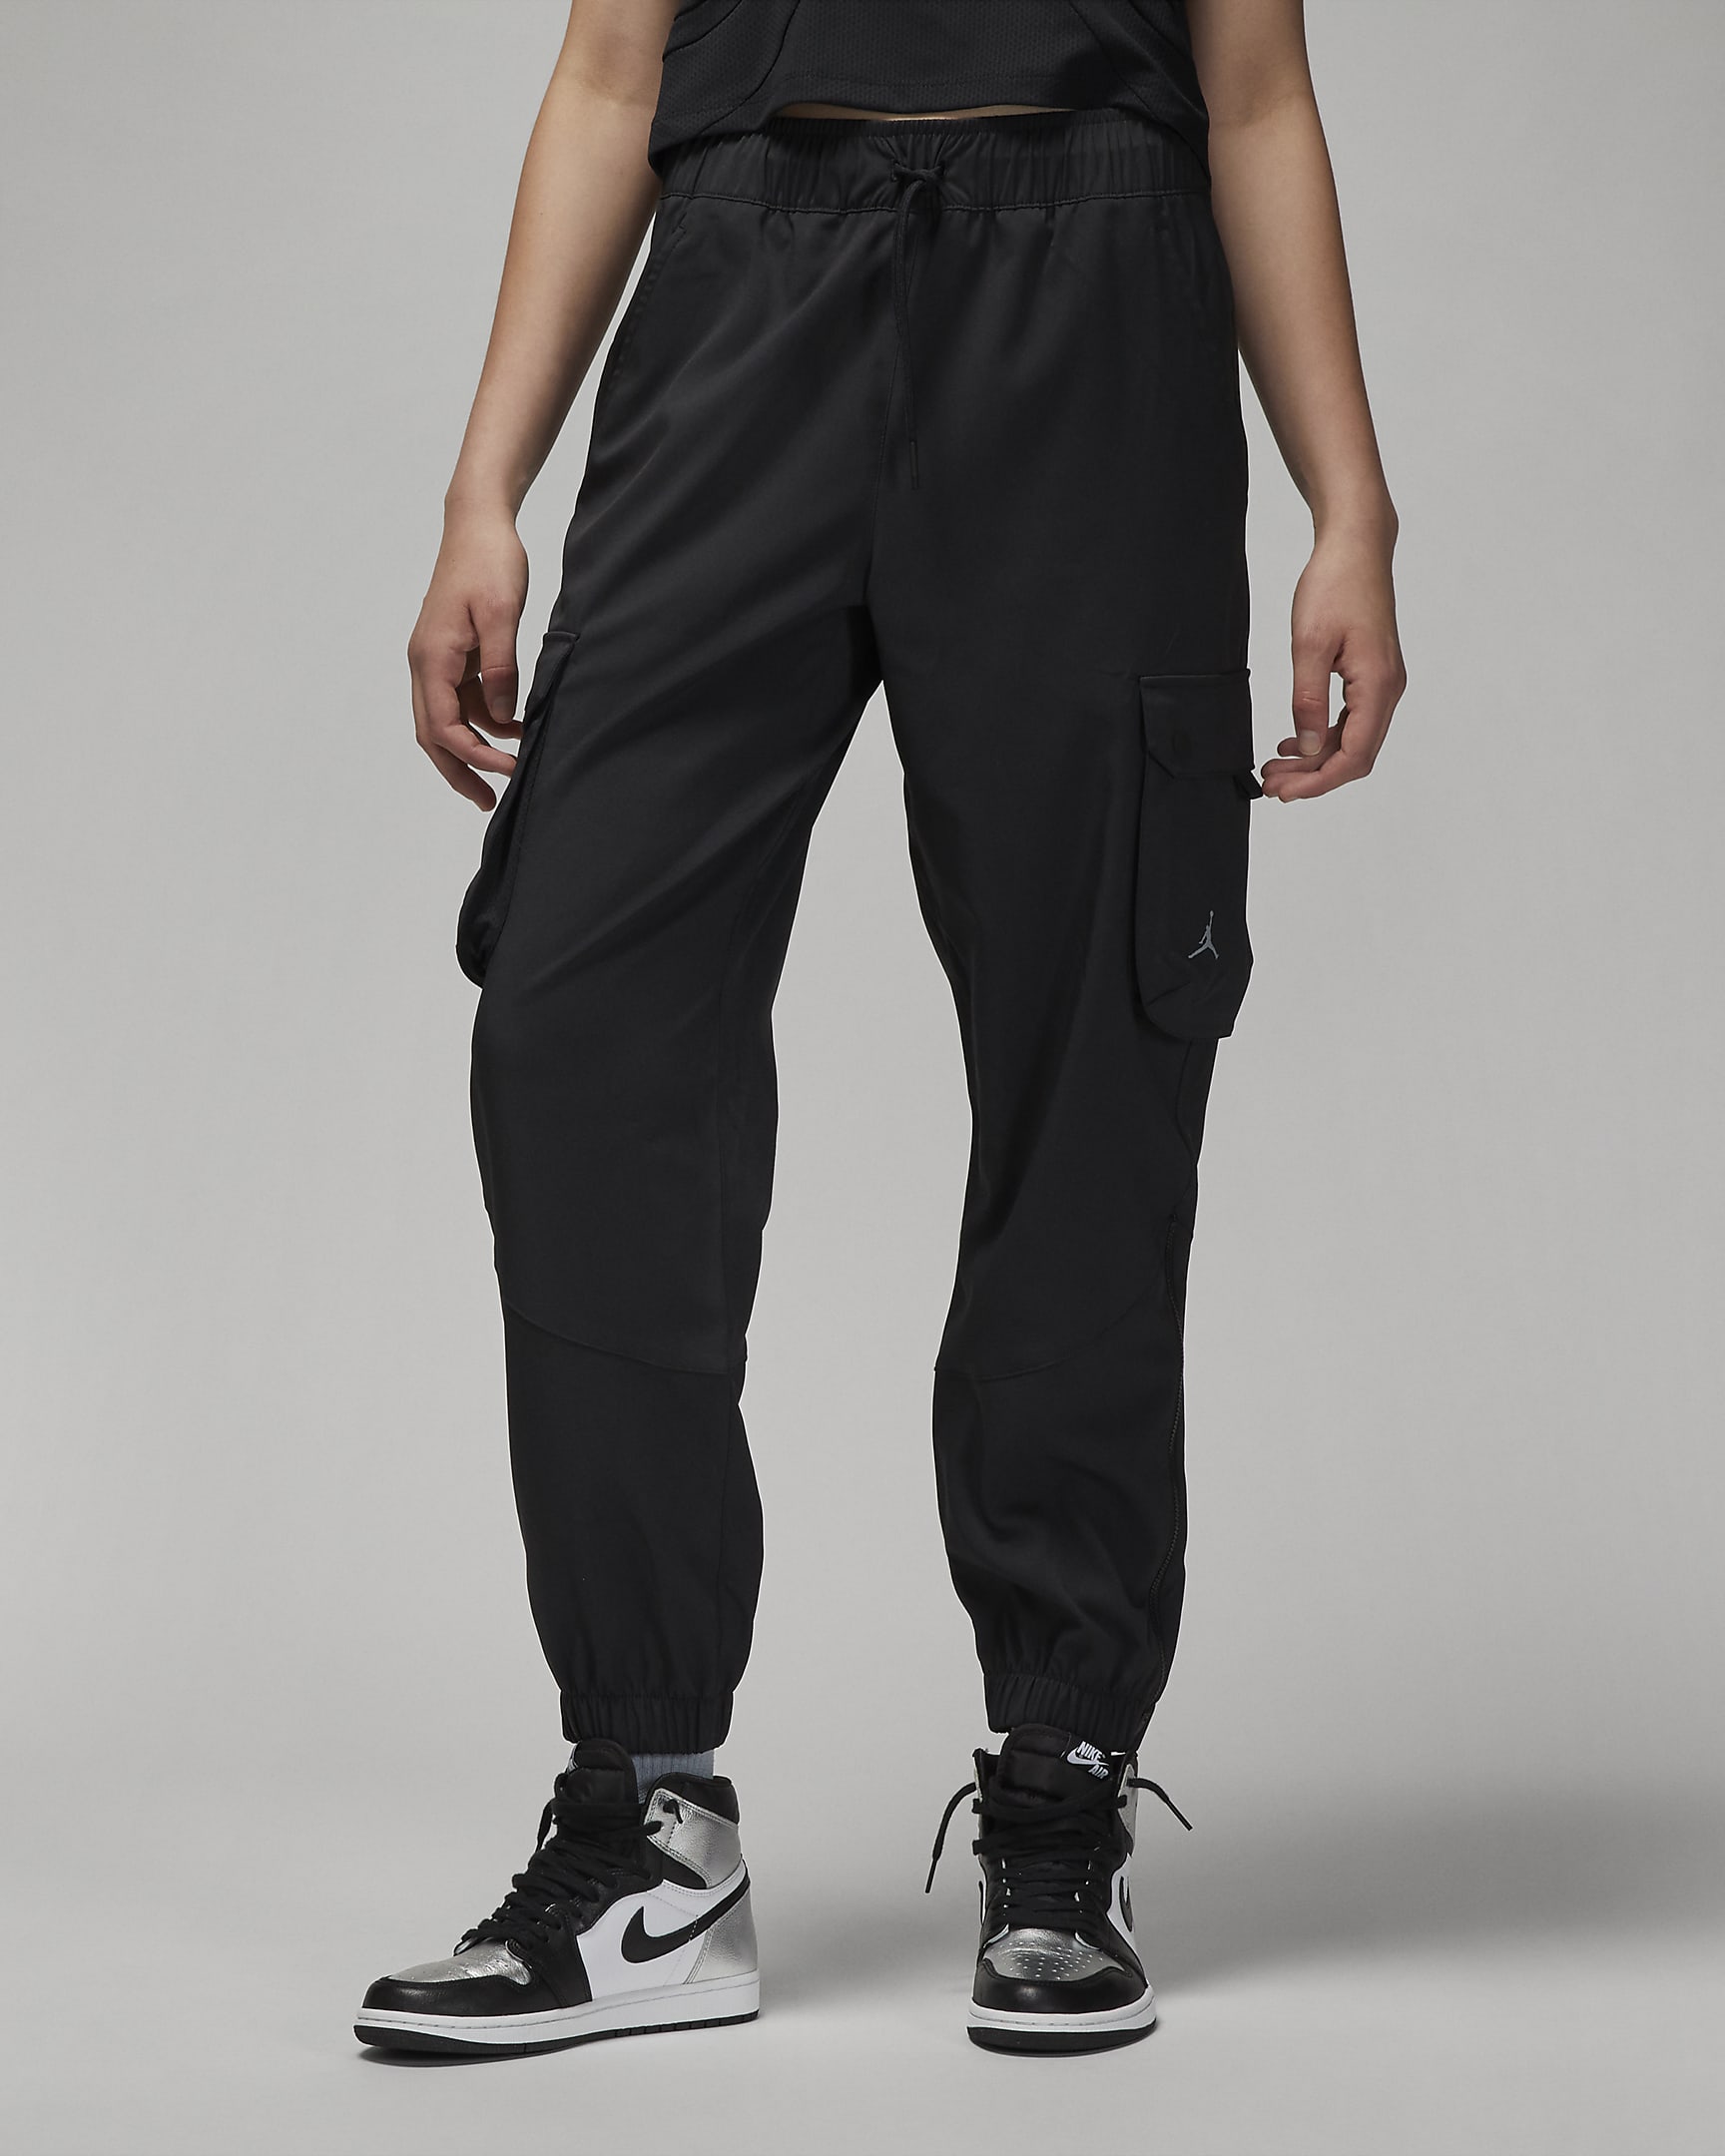 Jordan Sport Tunnel Women's Trousers - Black/Black/Stealth